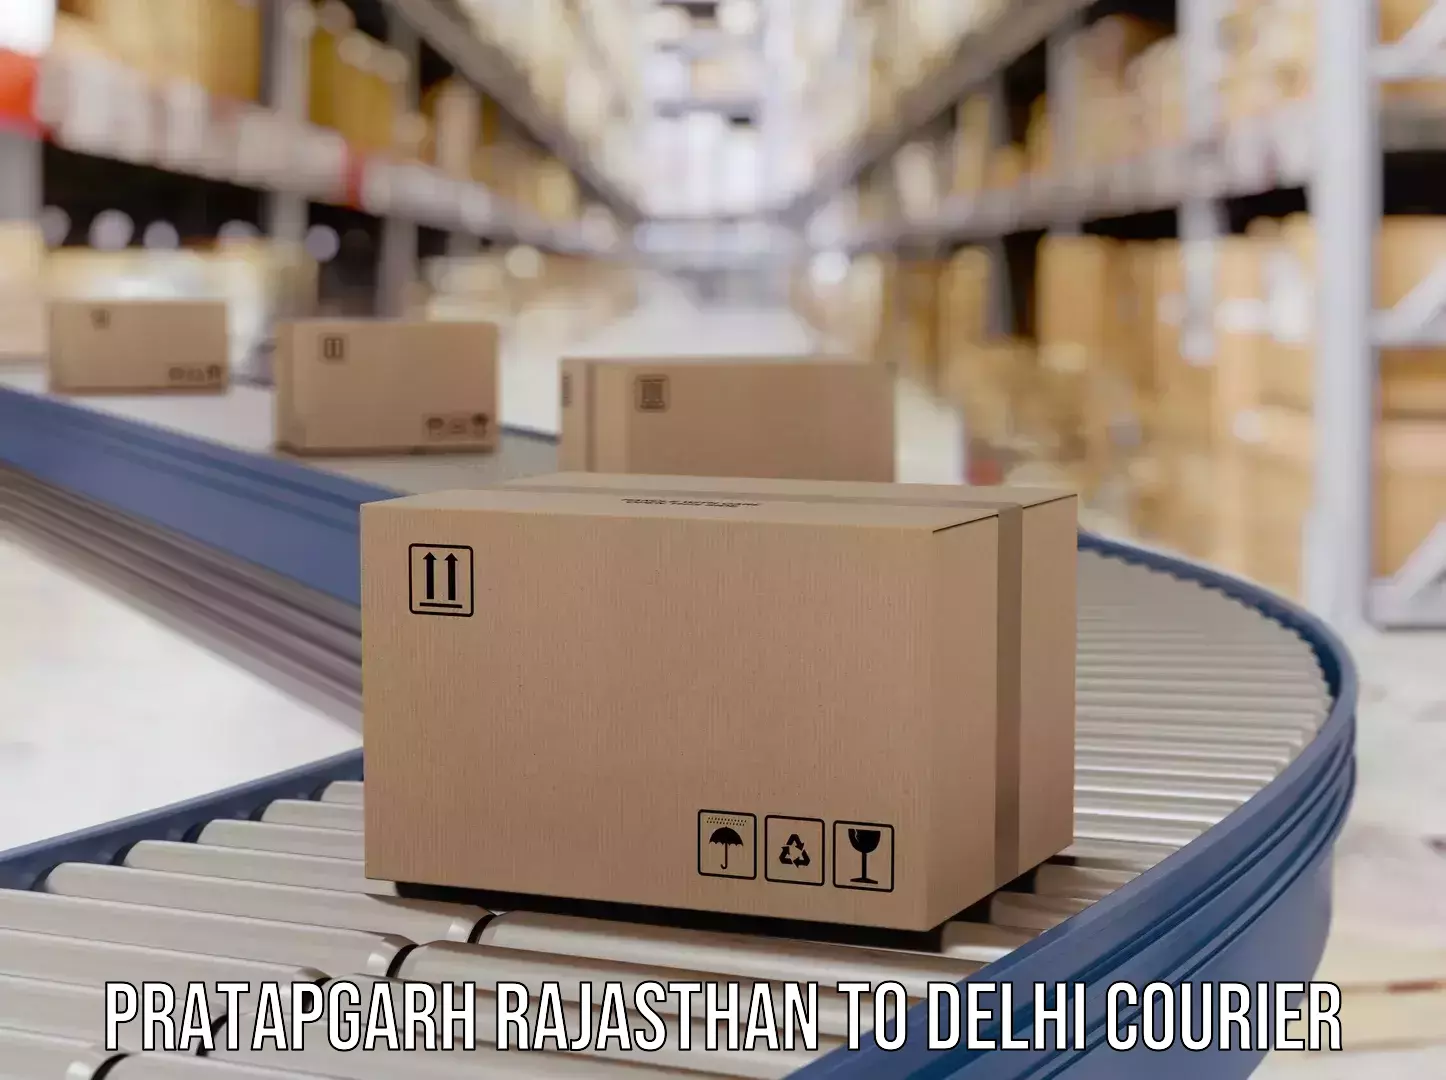 Urban courier service Pratapgarh Rajasthan to IIT Delhi